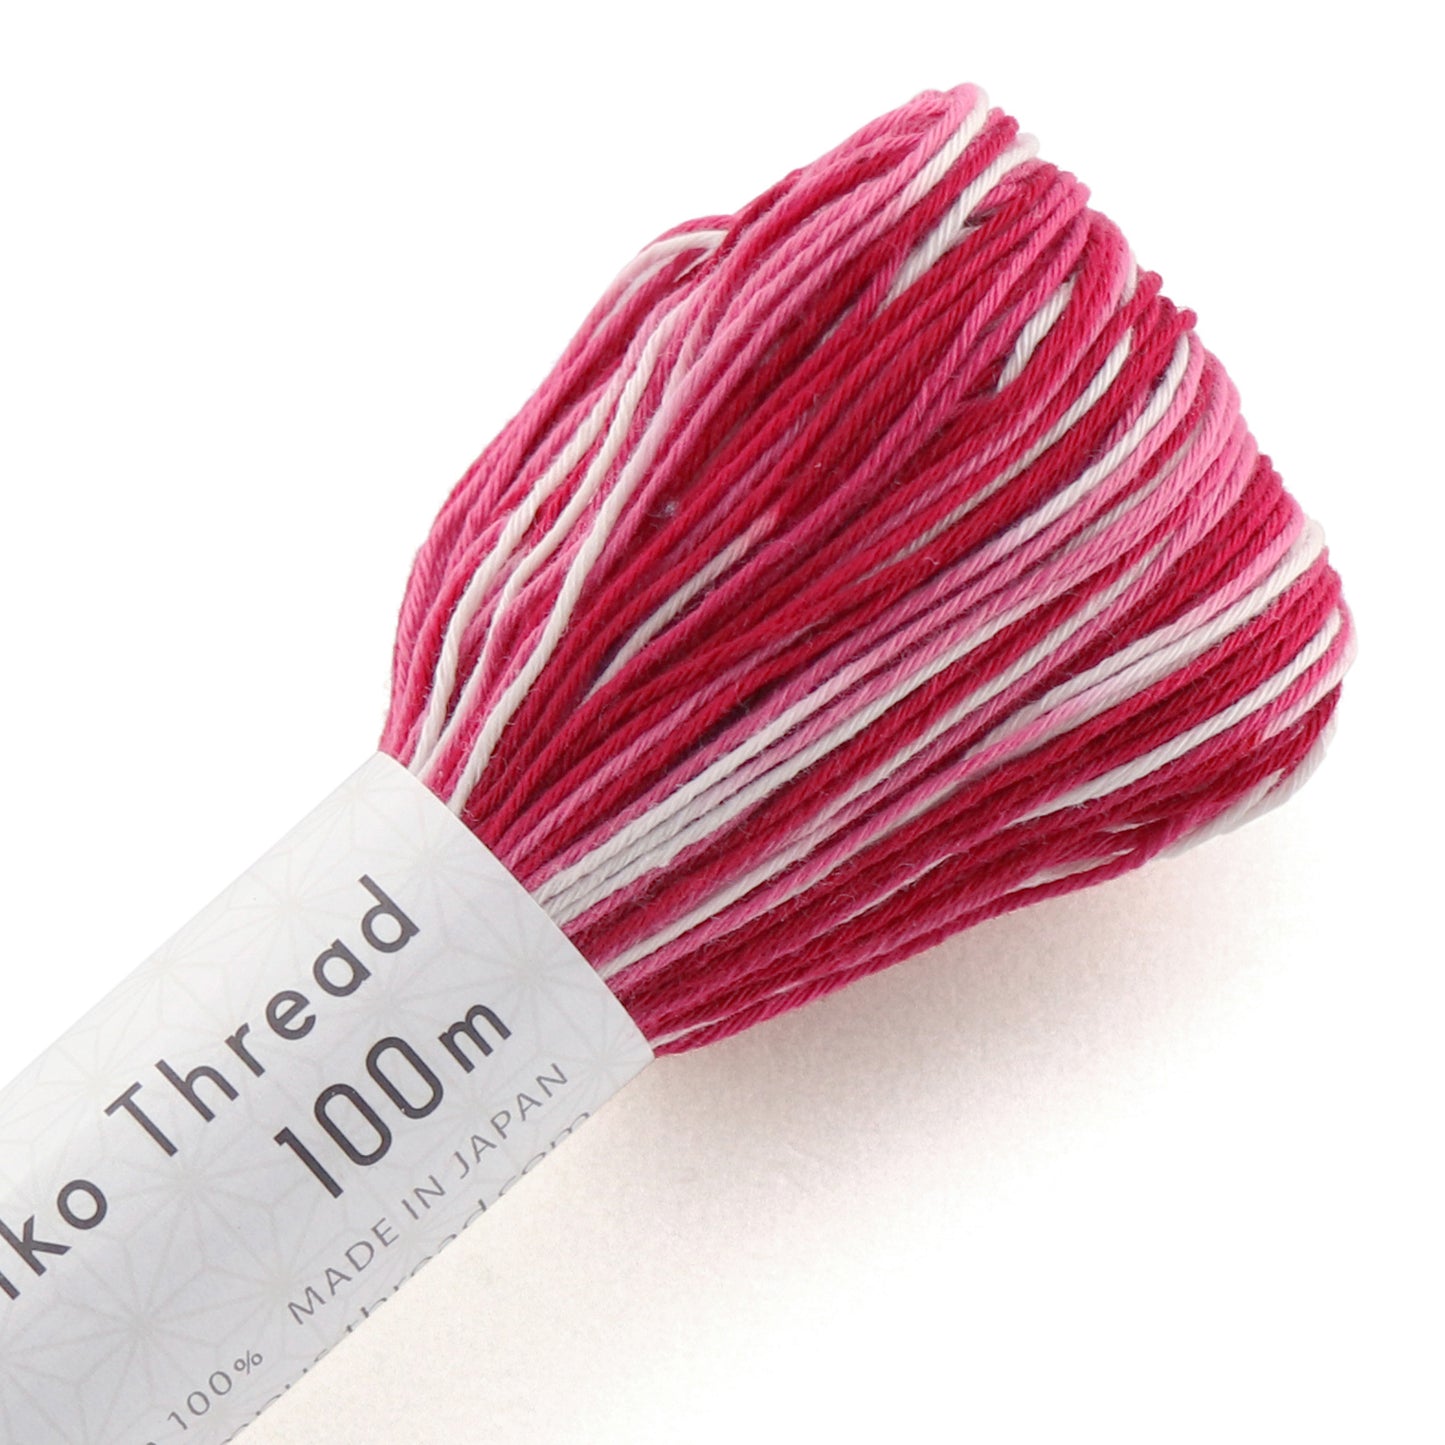 Olympus #152 Japanese cotton sashiko thread 100 meter skien variegated white pink red